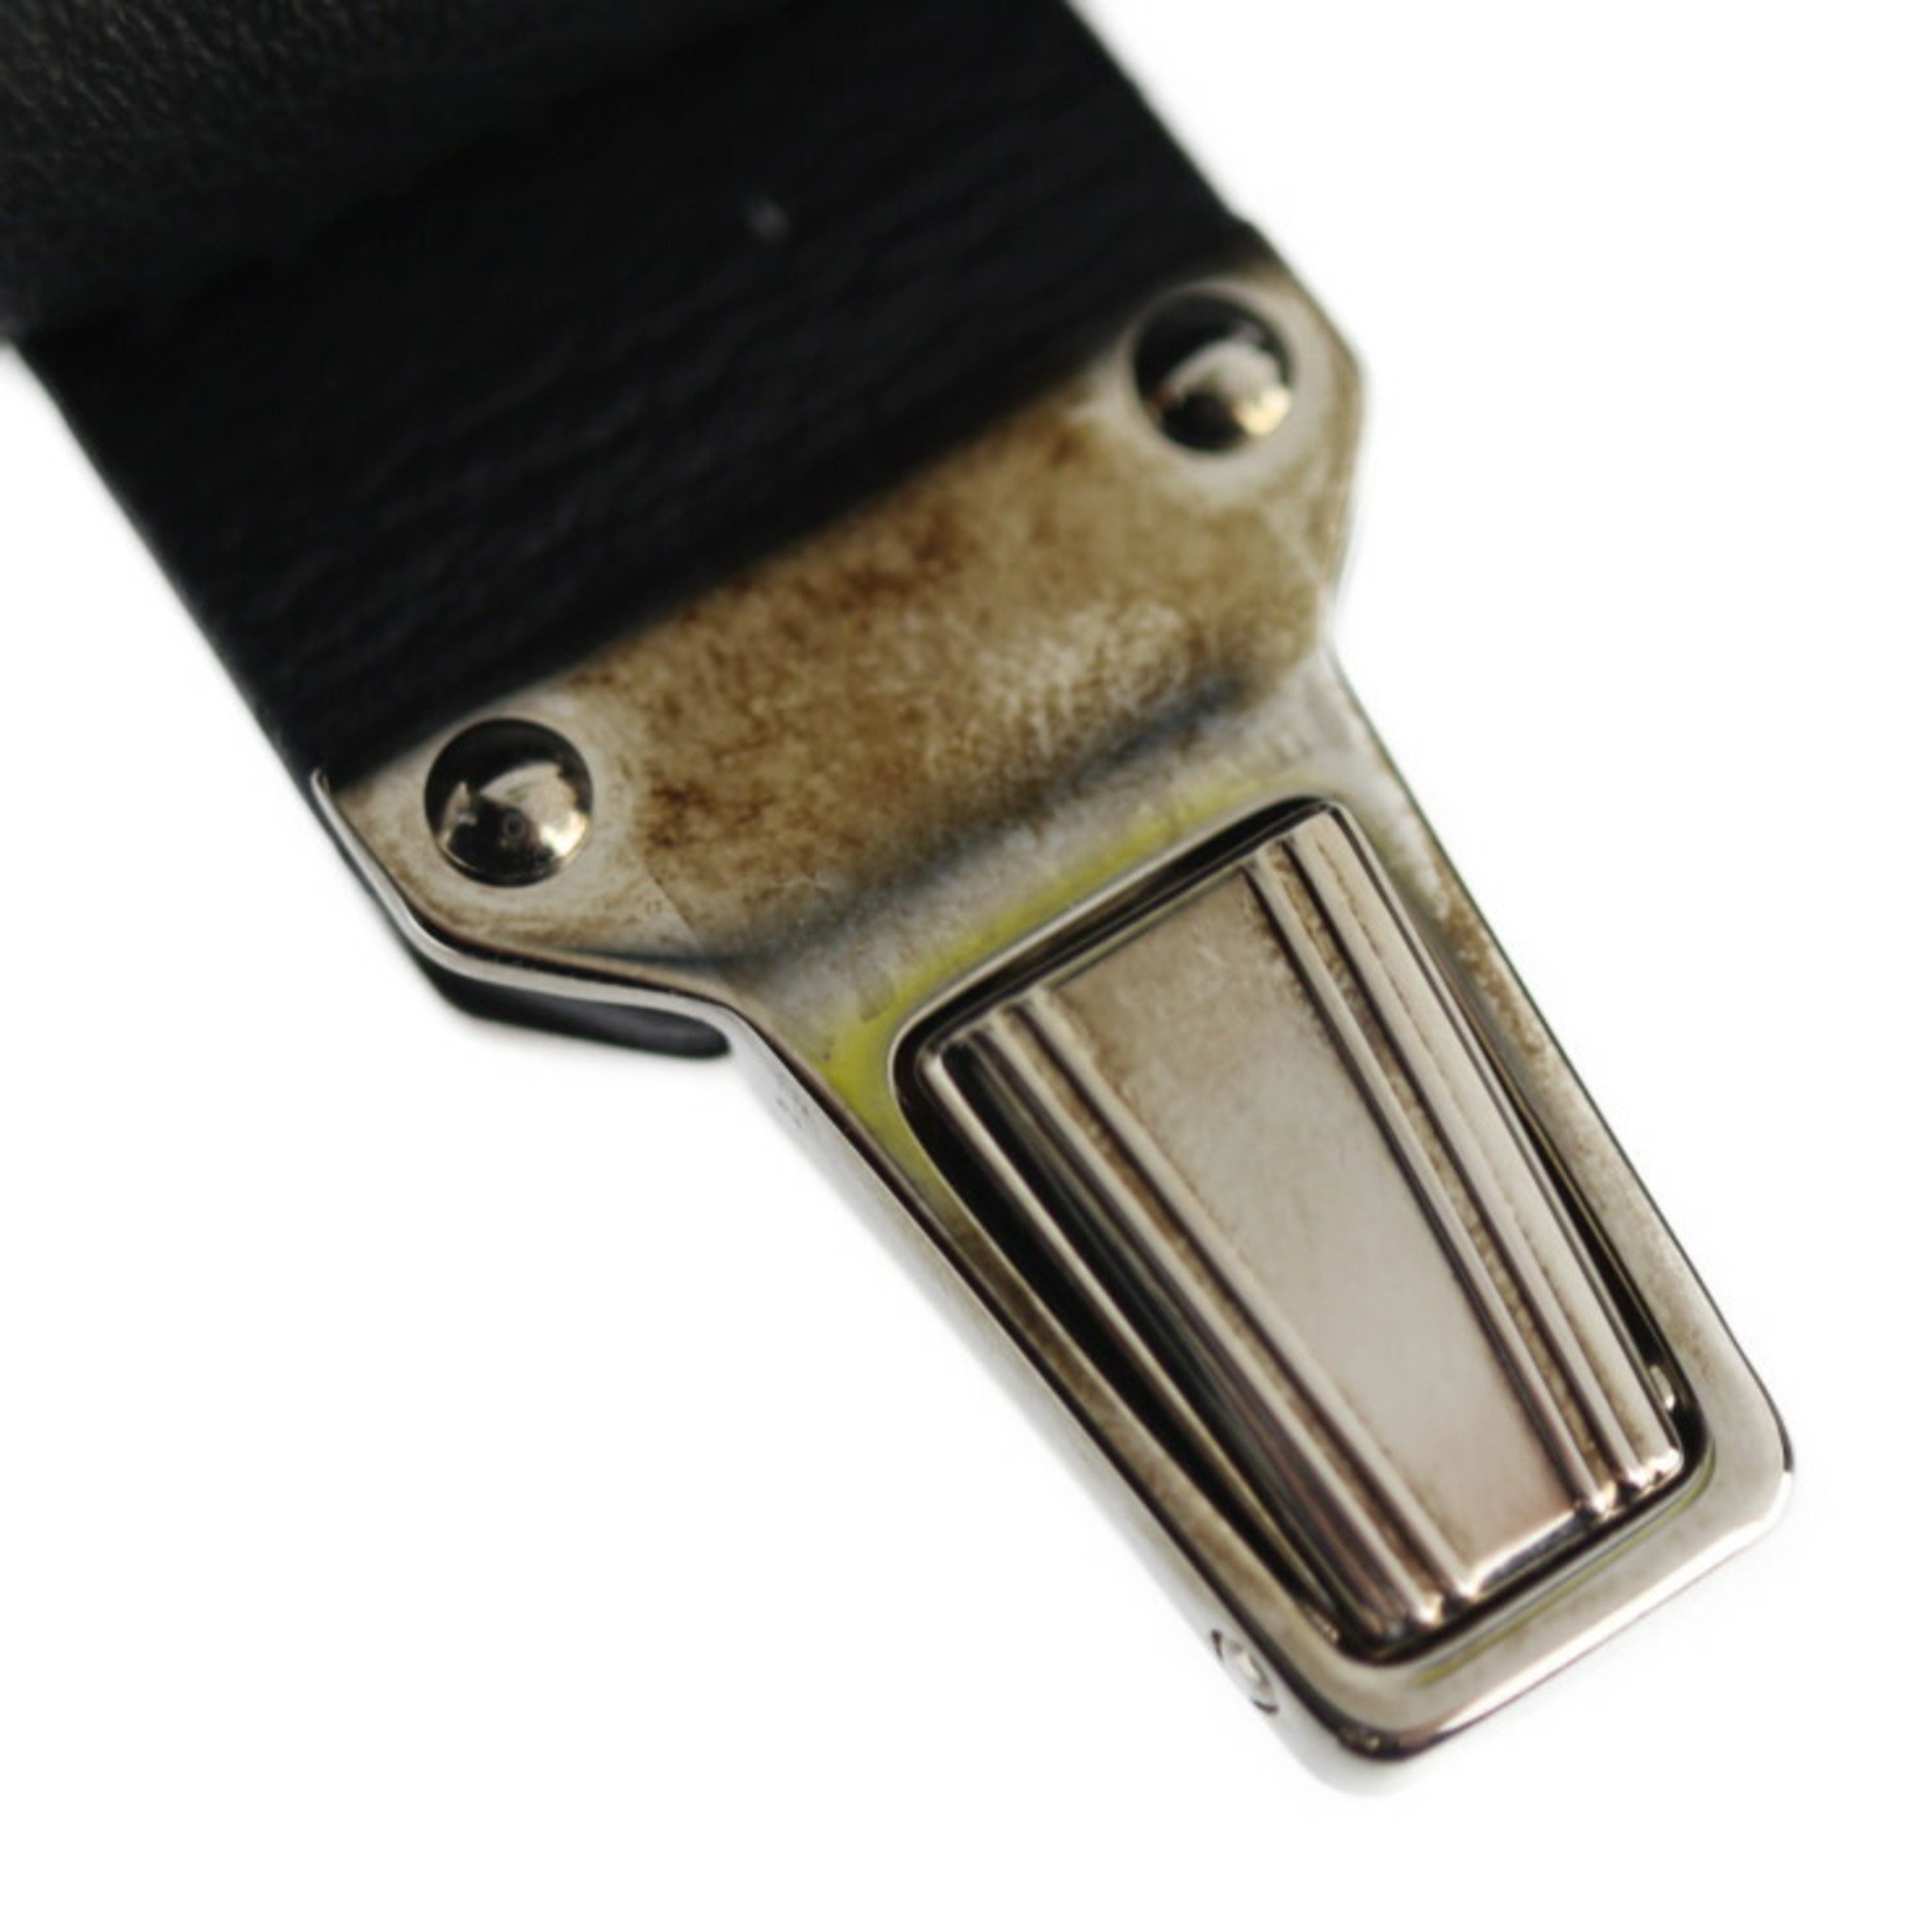 BALENCIAGA Balenciaga Paper Zip Around Sight Clutch Bag 357328 Calf Leather Black Second Handbag